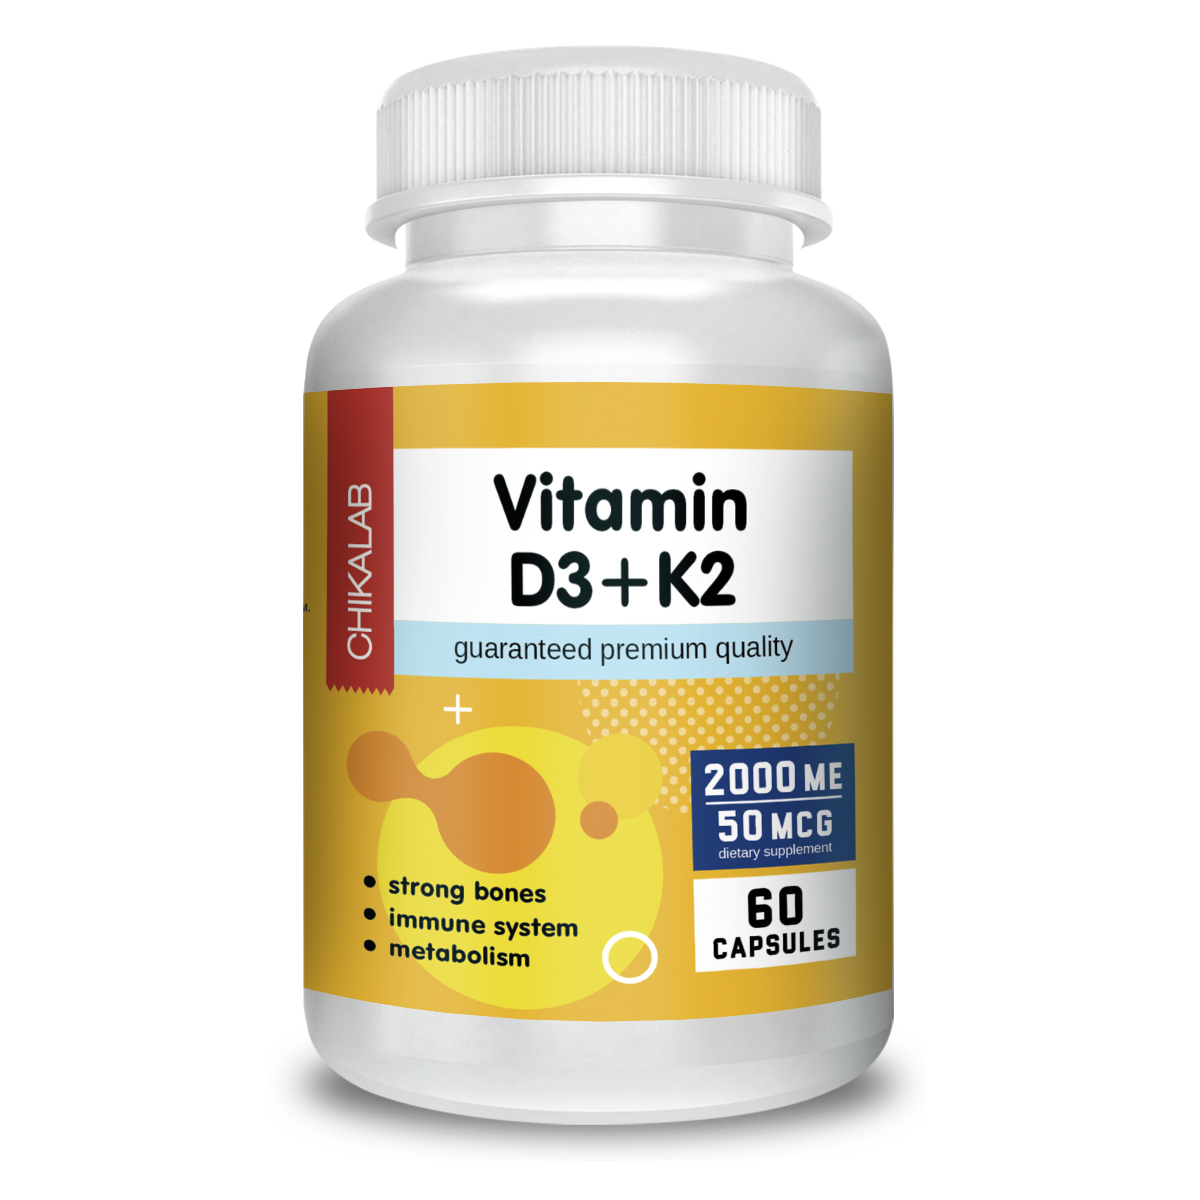 Витамины и минералы - D3+K2 2000 МЕ, 60 кап.